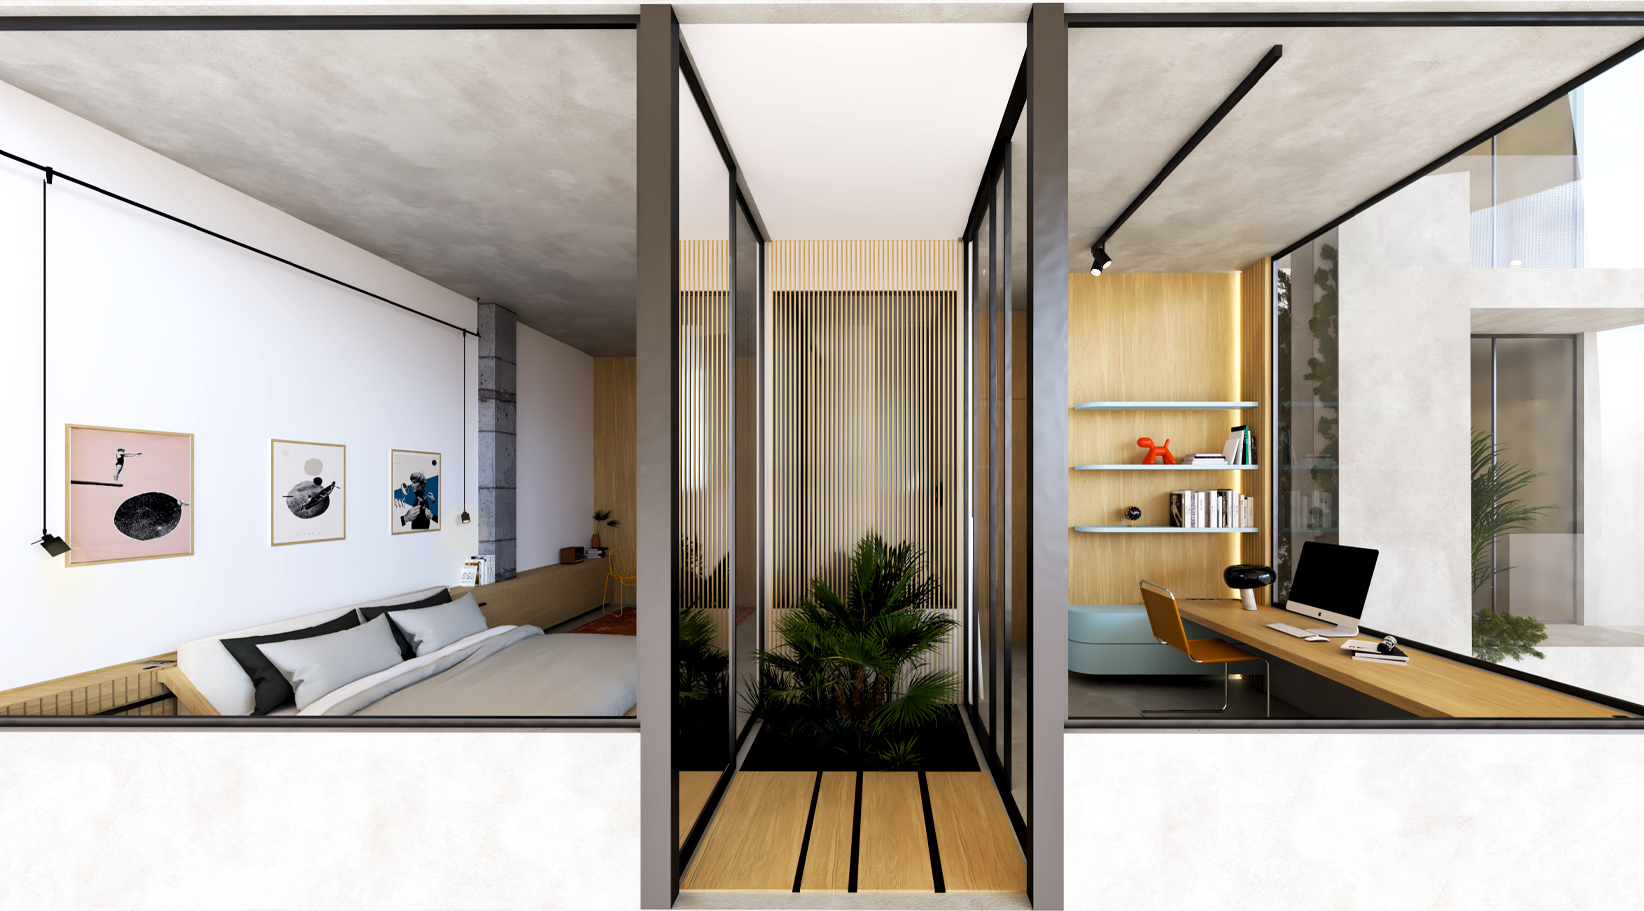 6-interior-design-amazing-house-bedroom-office-ideas-atrium-concept